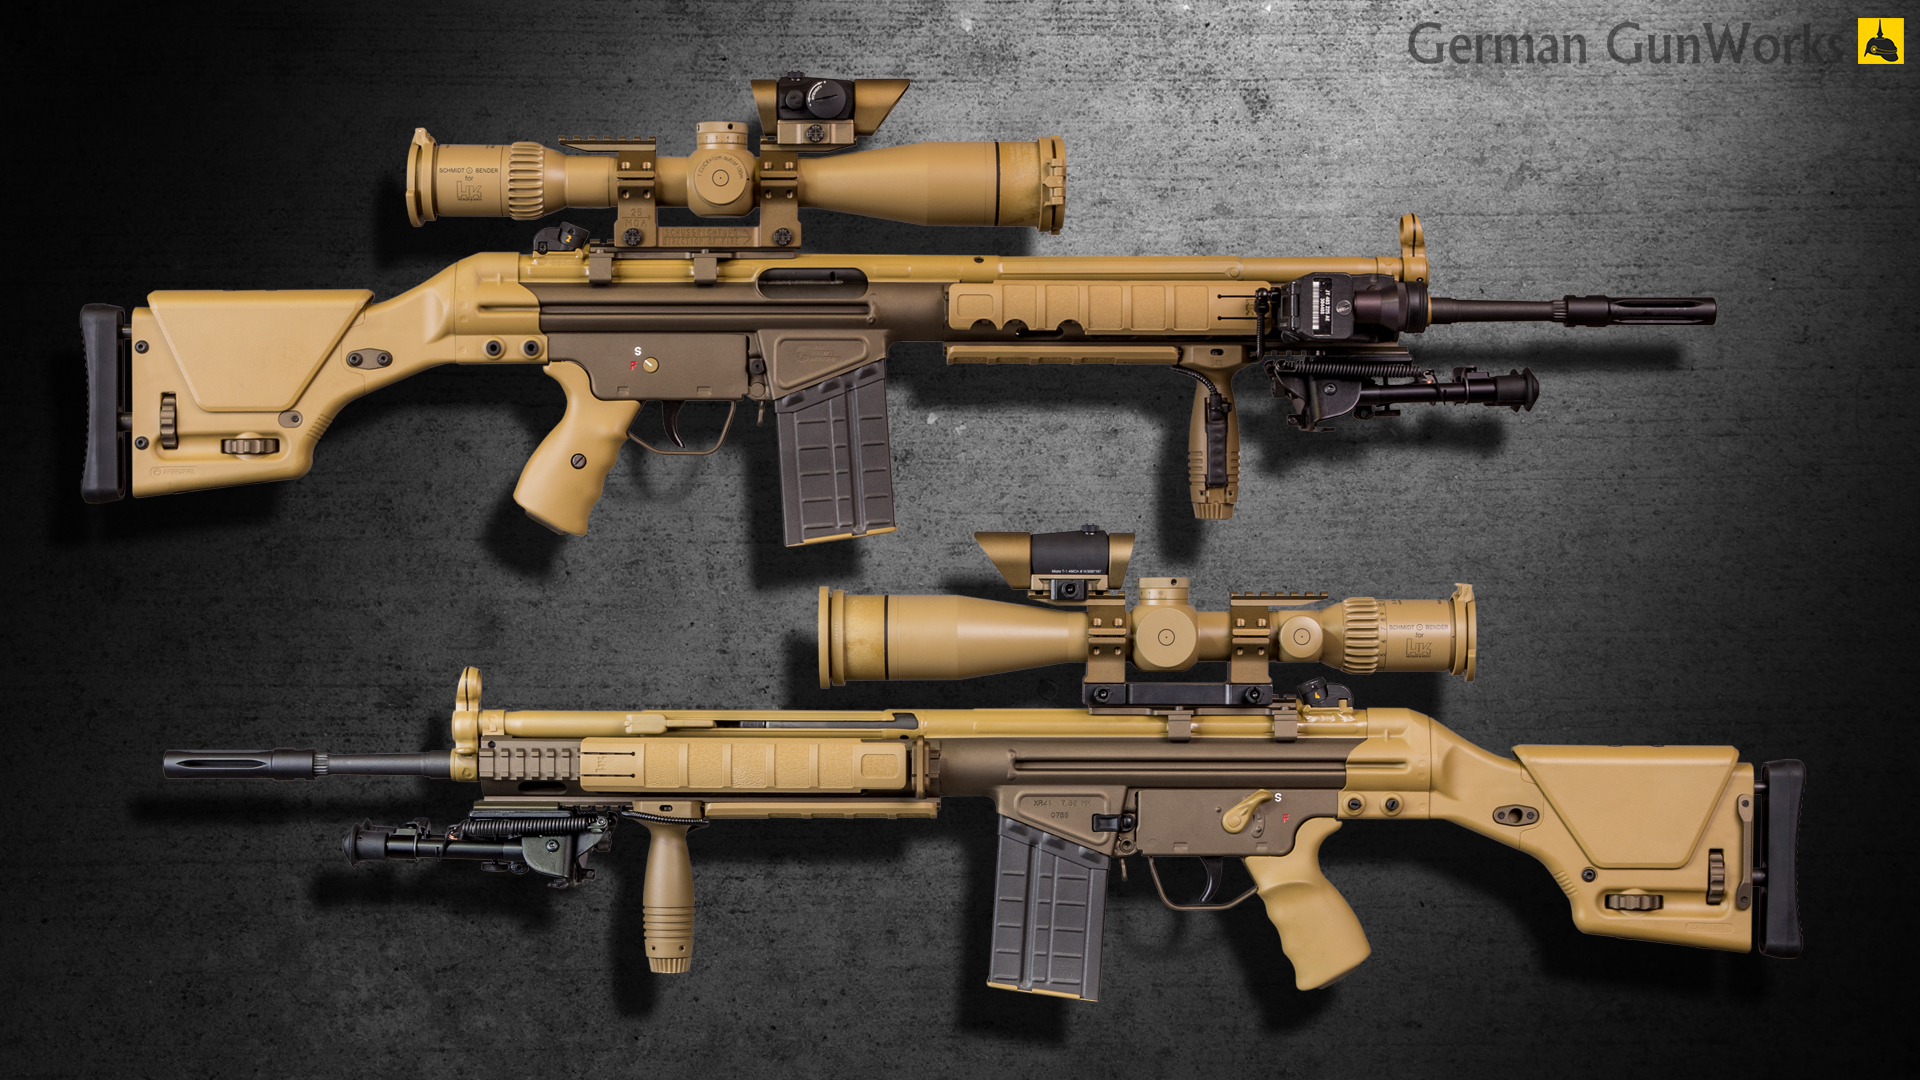 German Gunworks G3 Dmr Dachs Custom Project